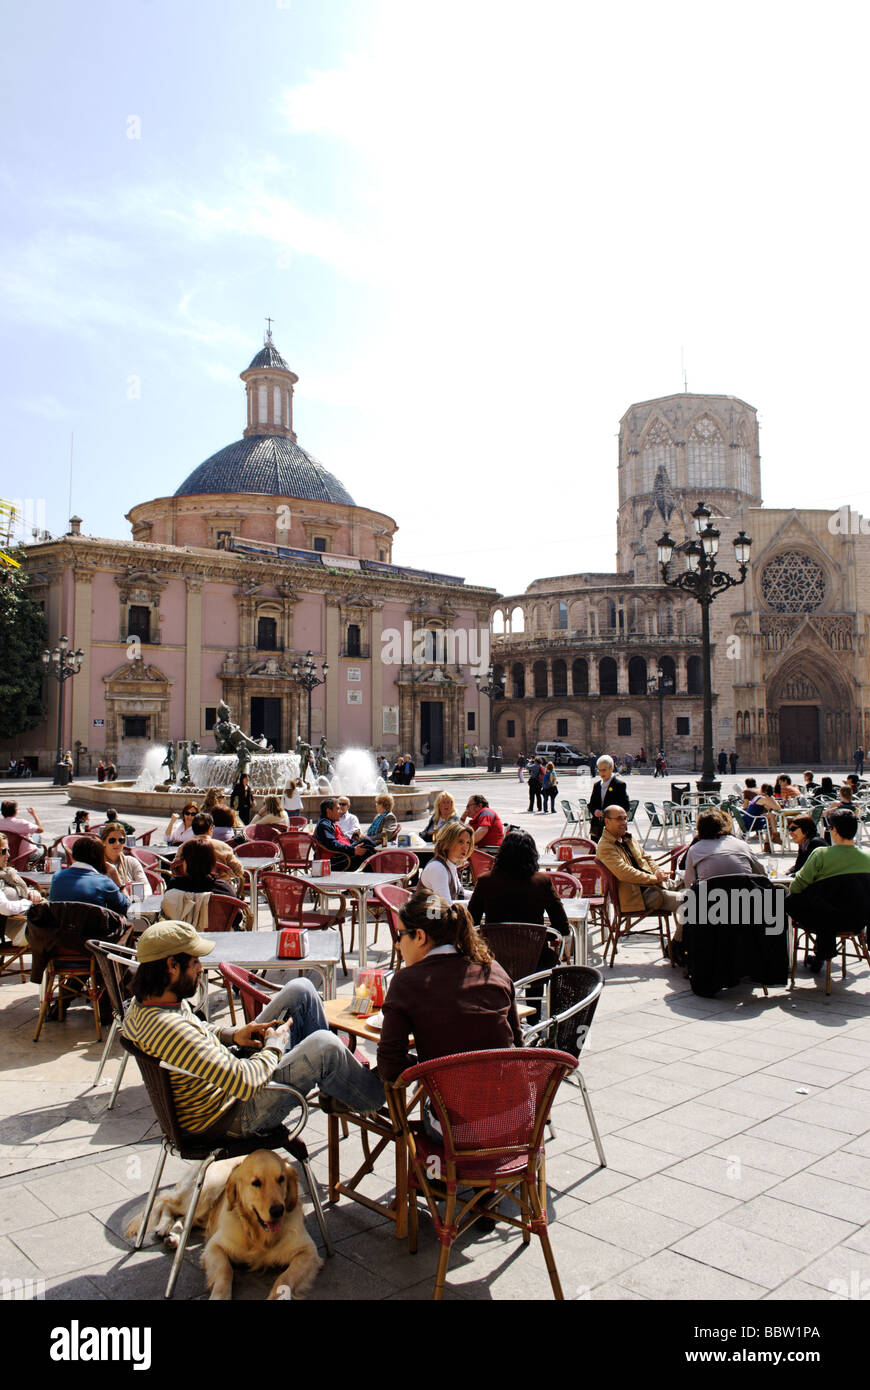 Les gens assis en terrasse du café en face de la cathédrale sur la place de la Vierge dans le centre de Valence Espagne Banque D'Images